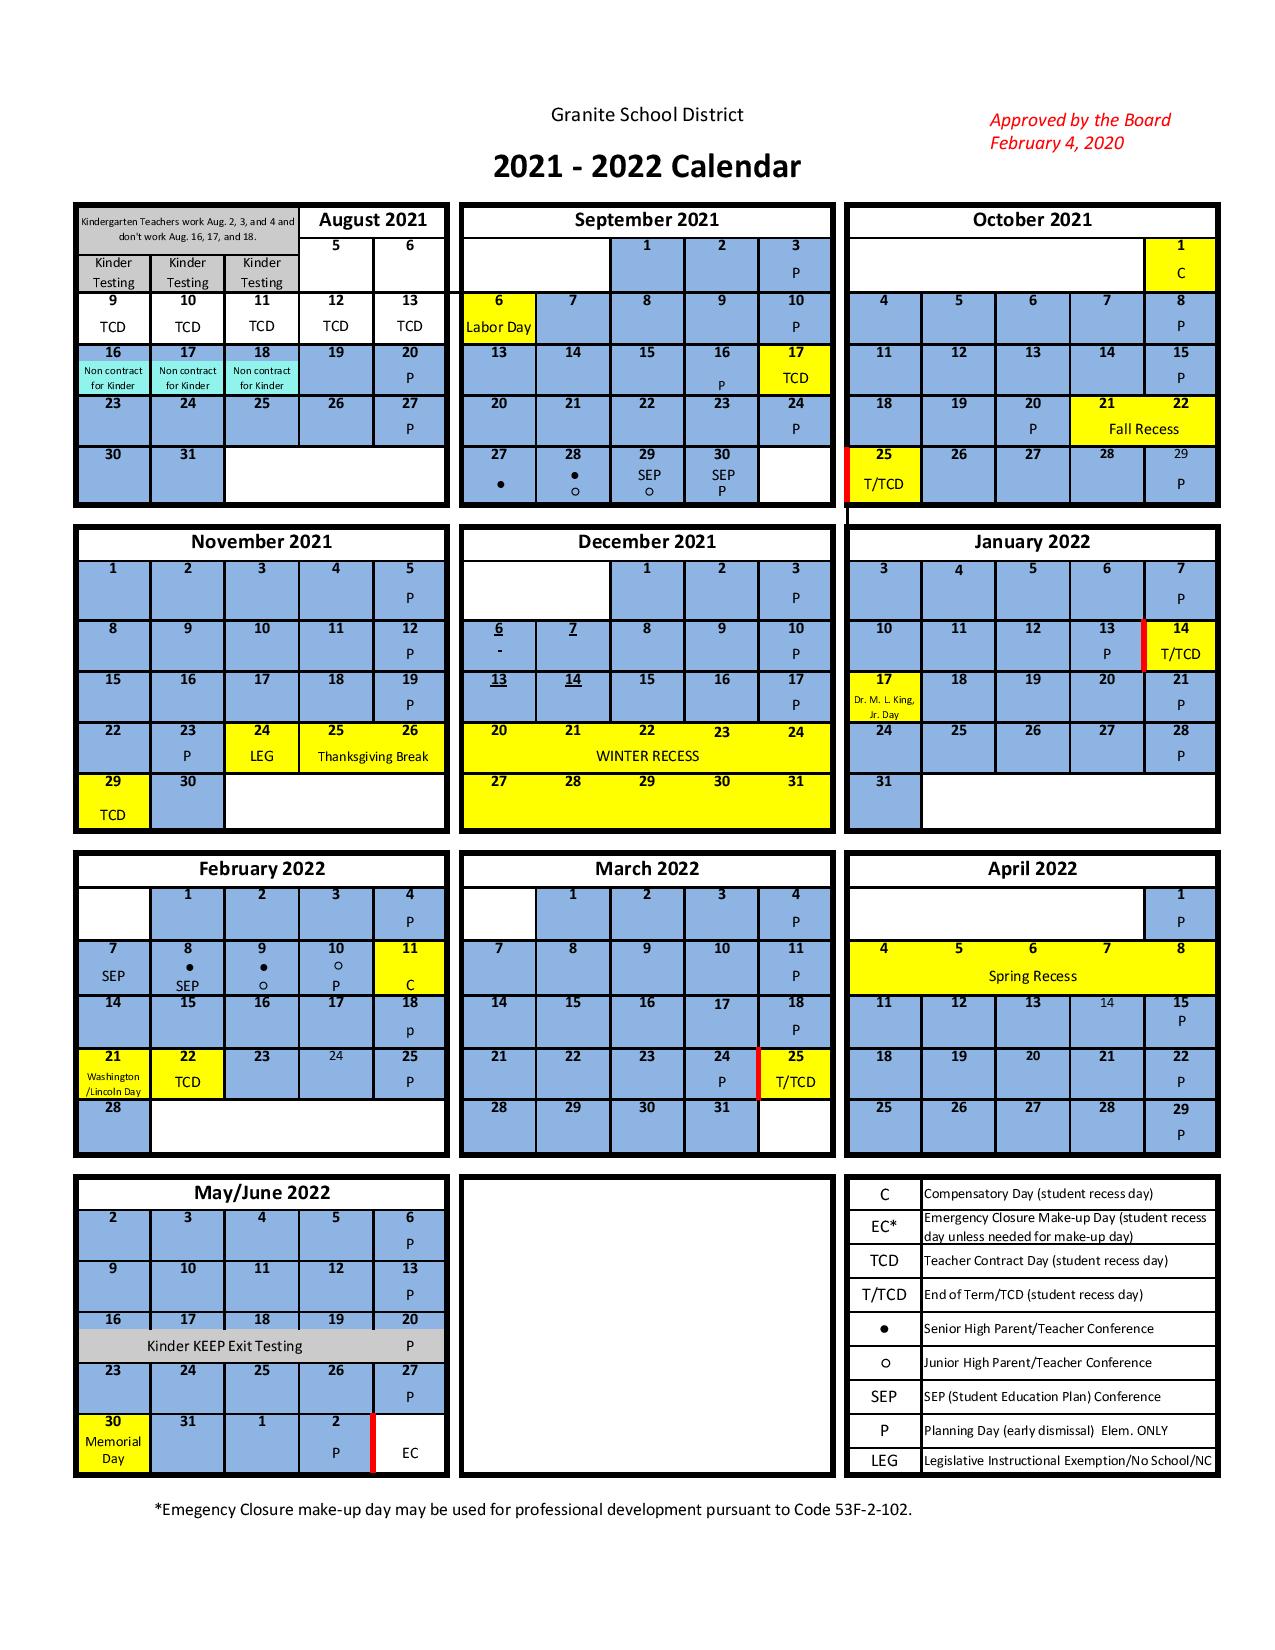 Granite School District Calendar 2021 2022 in PDF